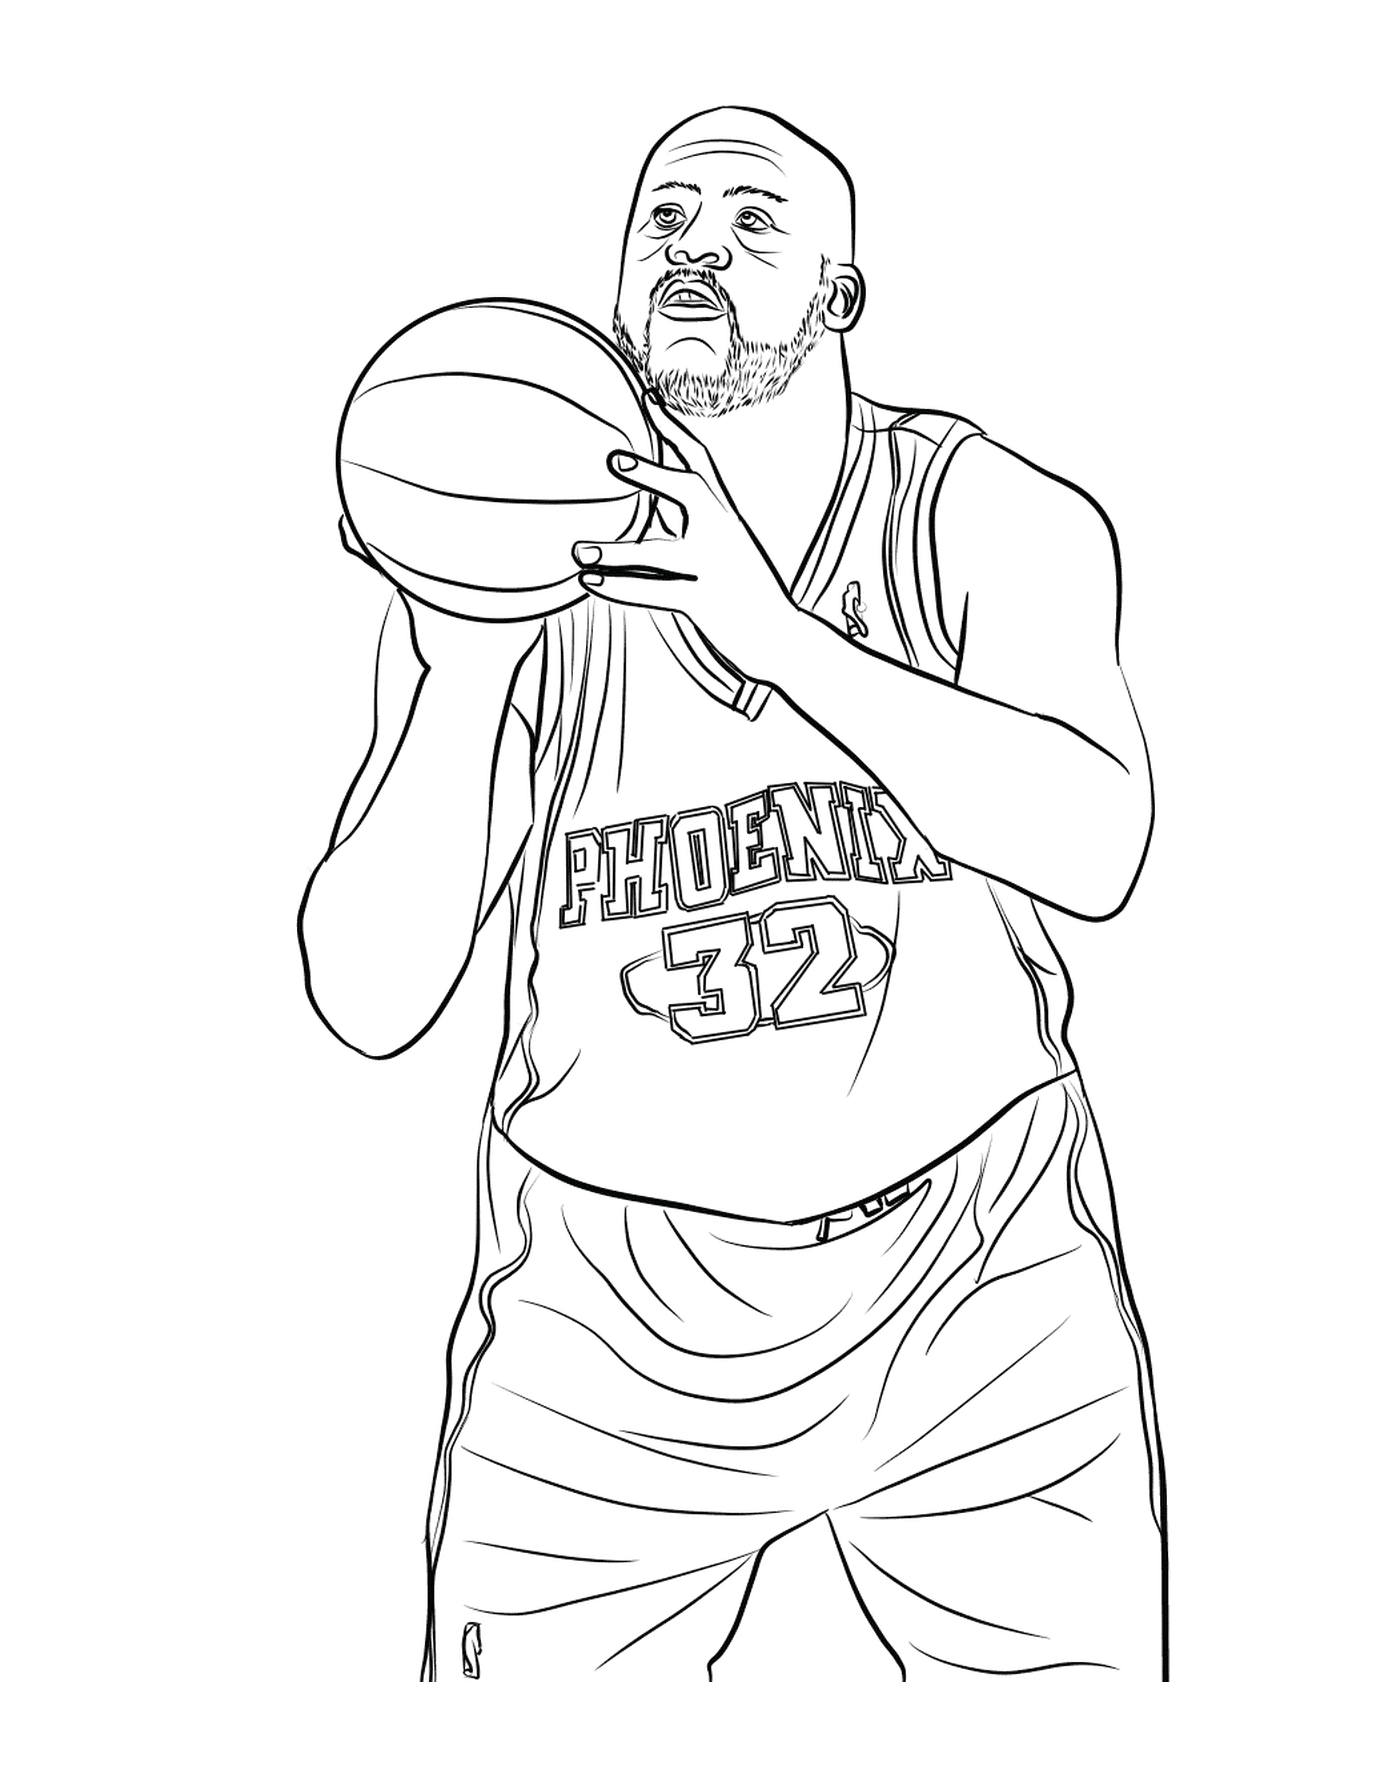  Человек, держащий баскетбольный мяч в руках 